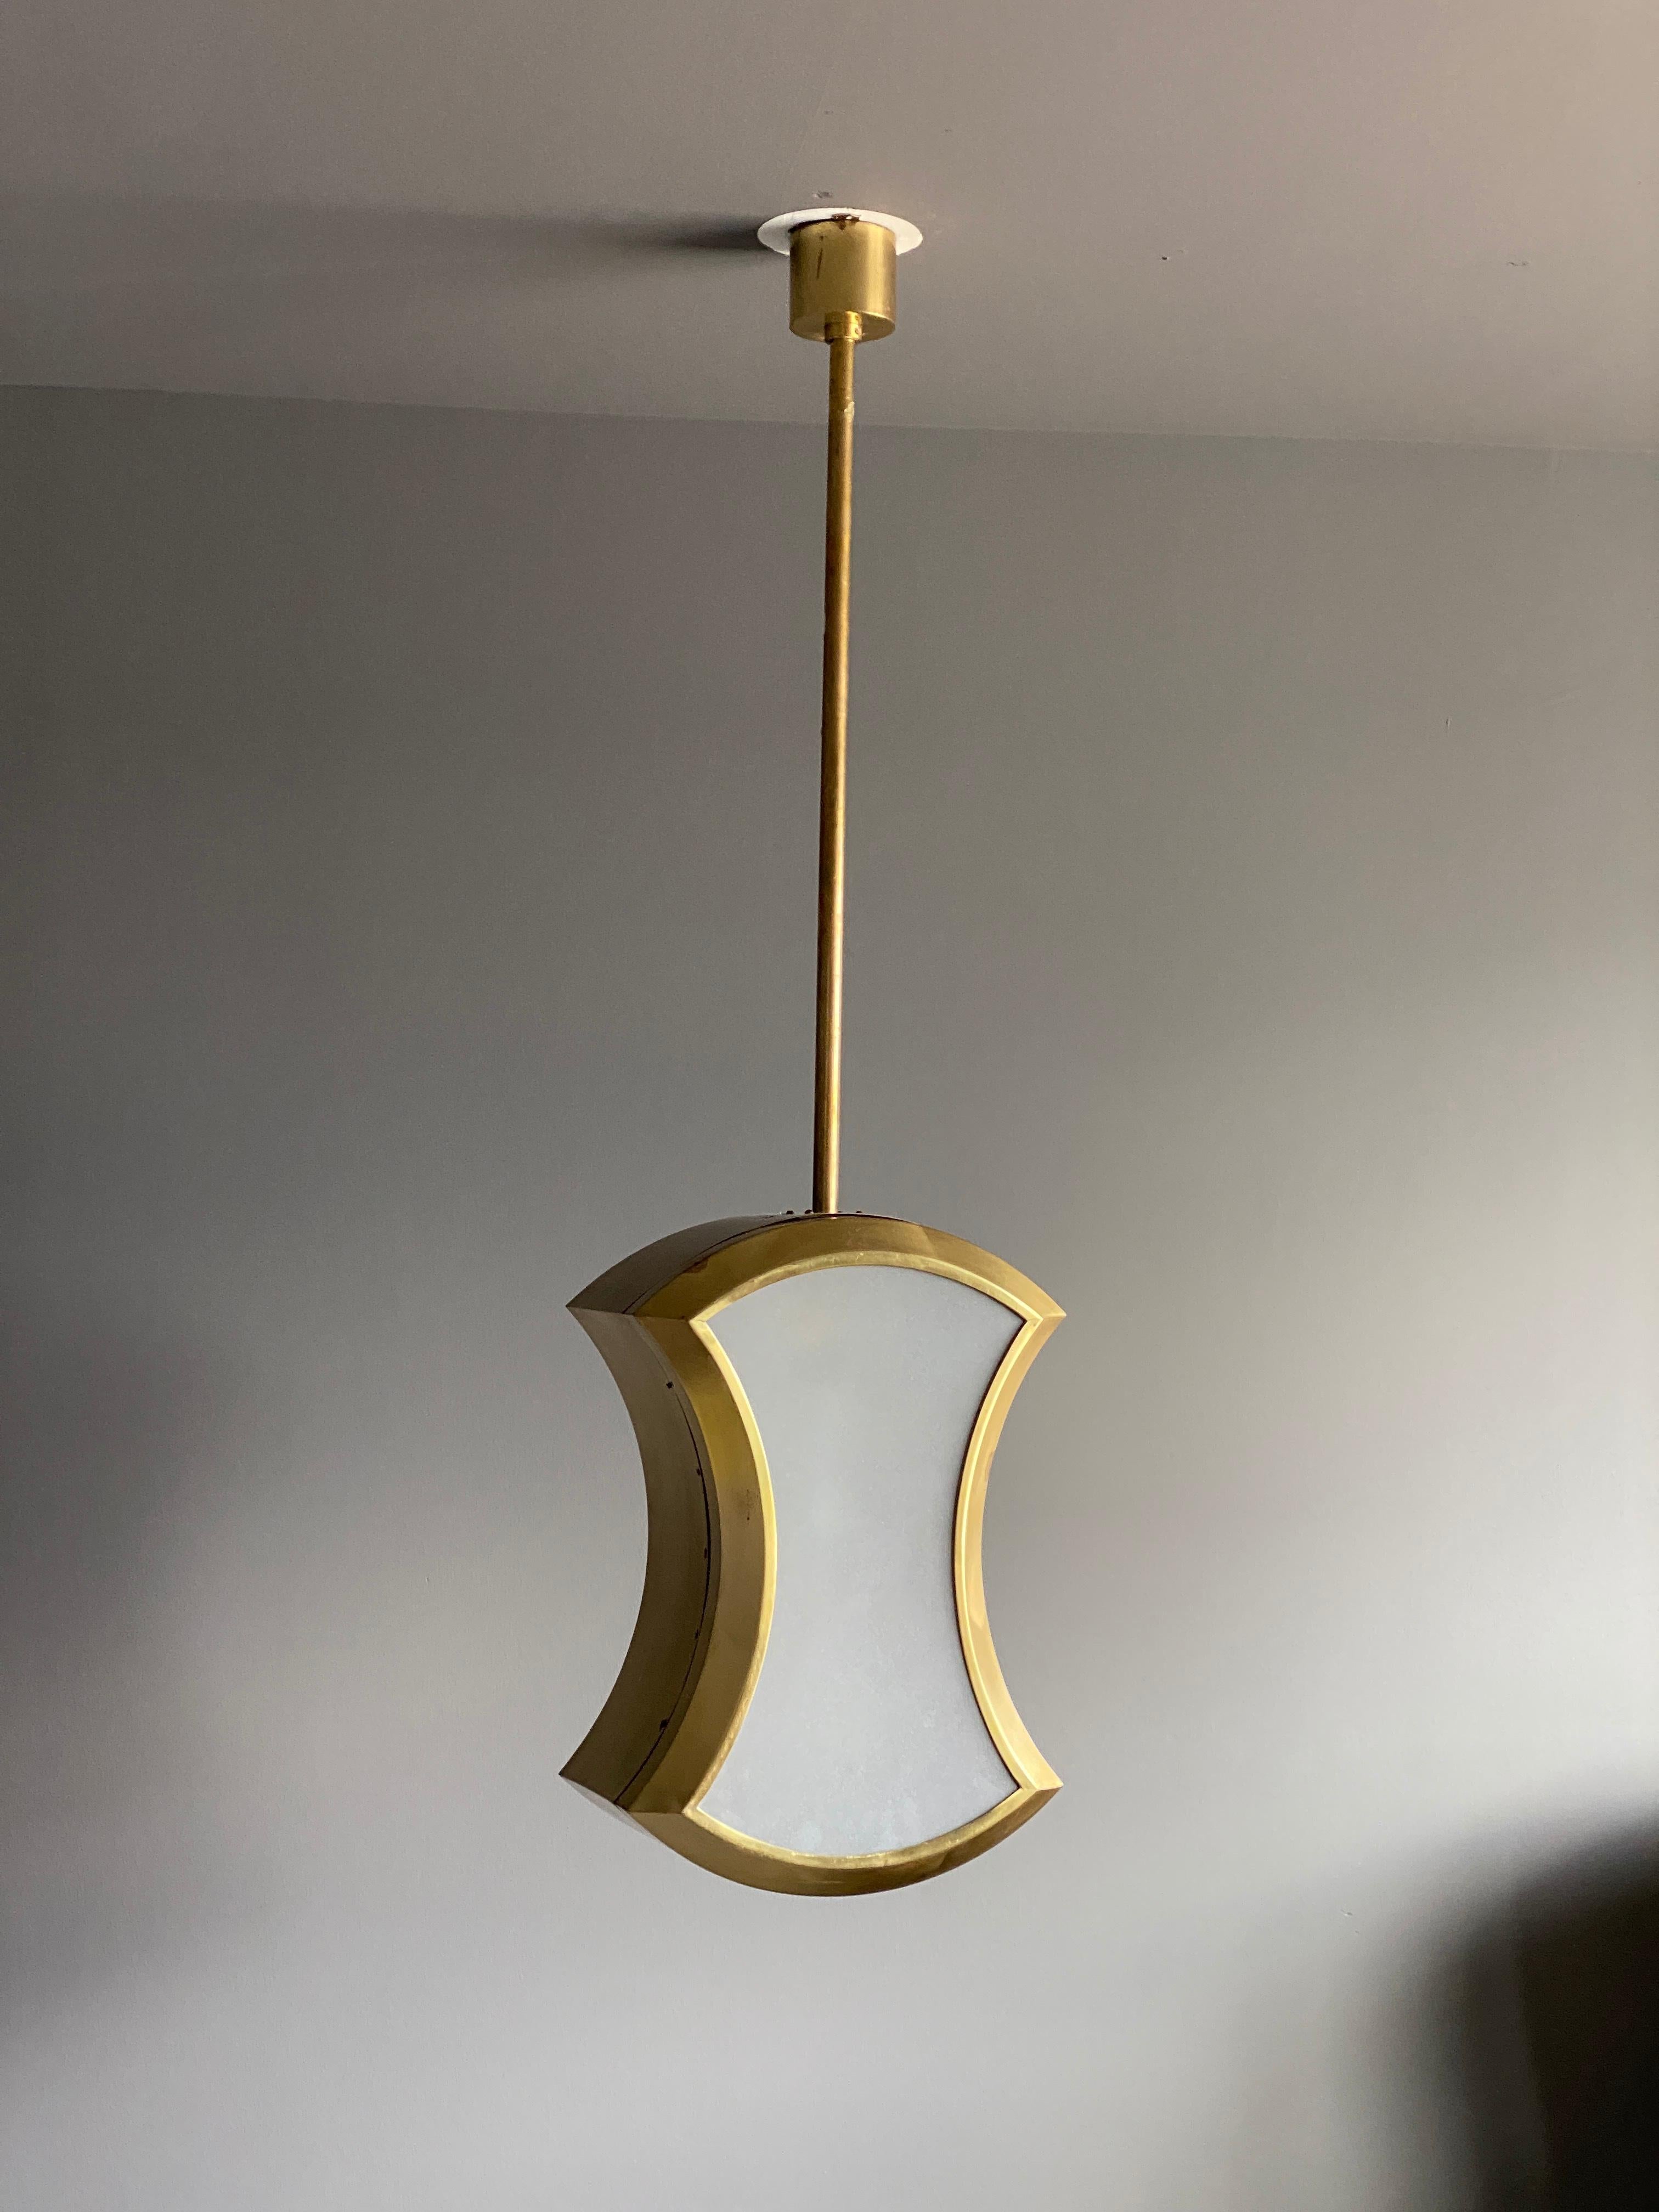 Italian, Modernist Ceiling Light / Pendant, Brass, Fogged Glass, Italy, 1950s 1